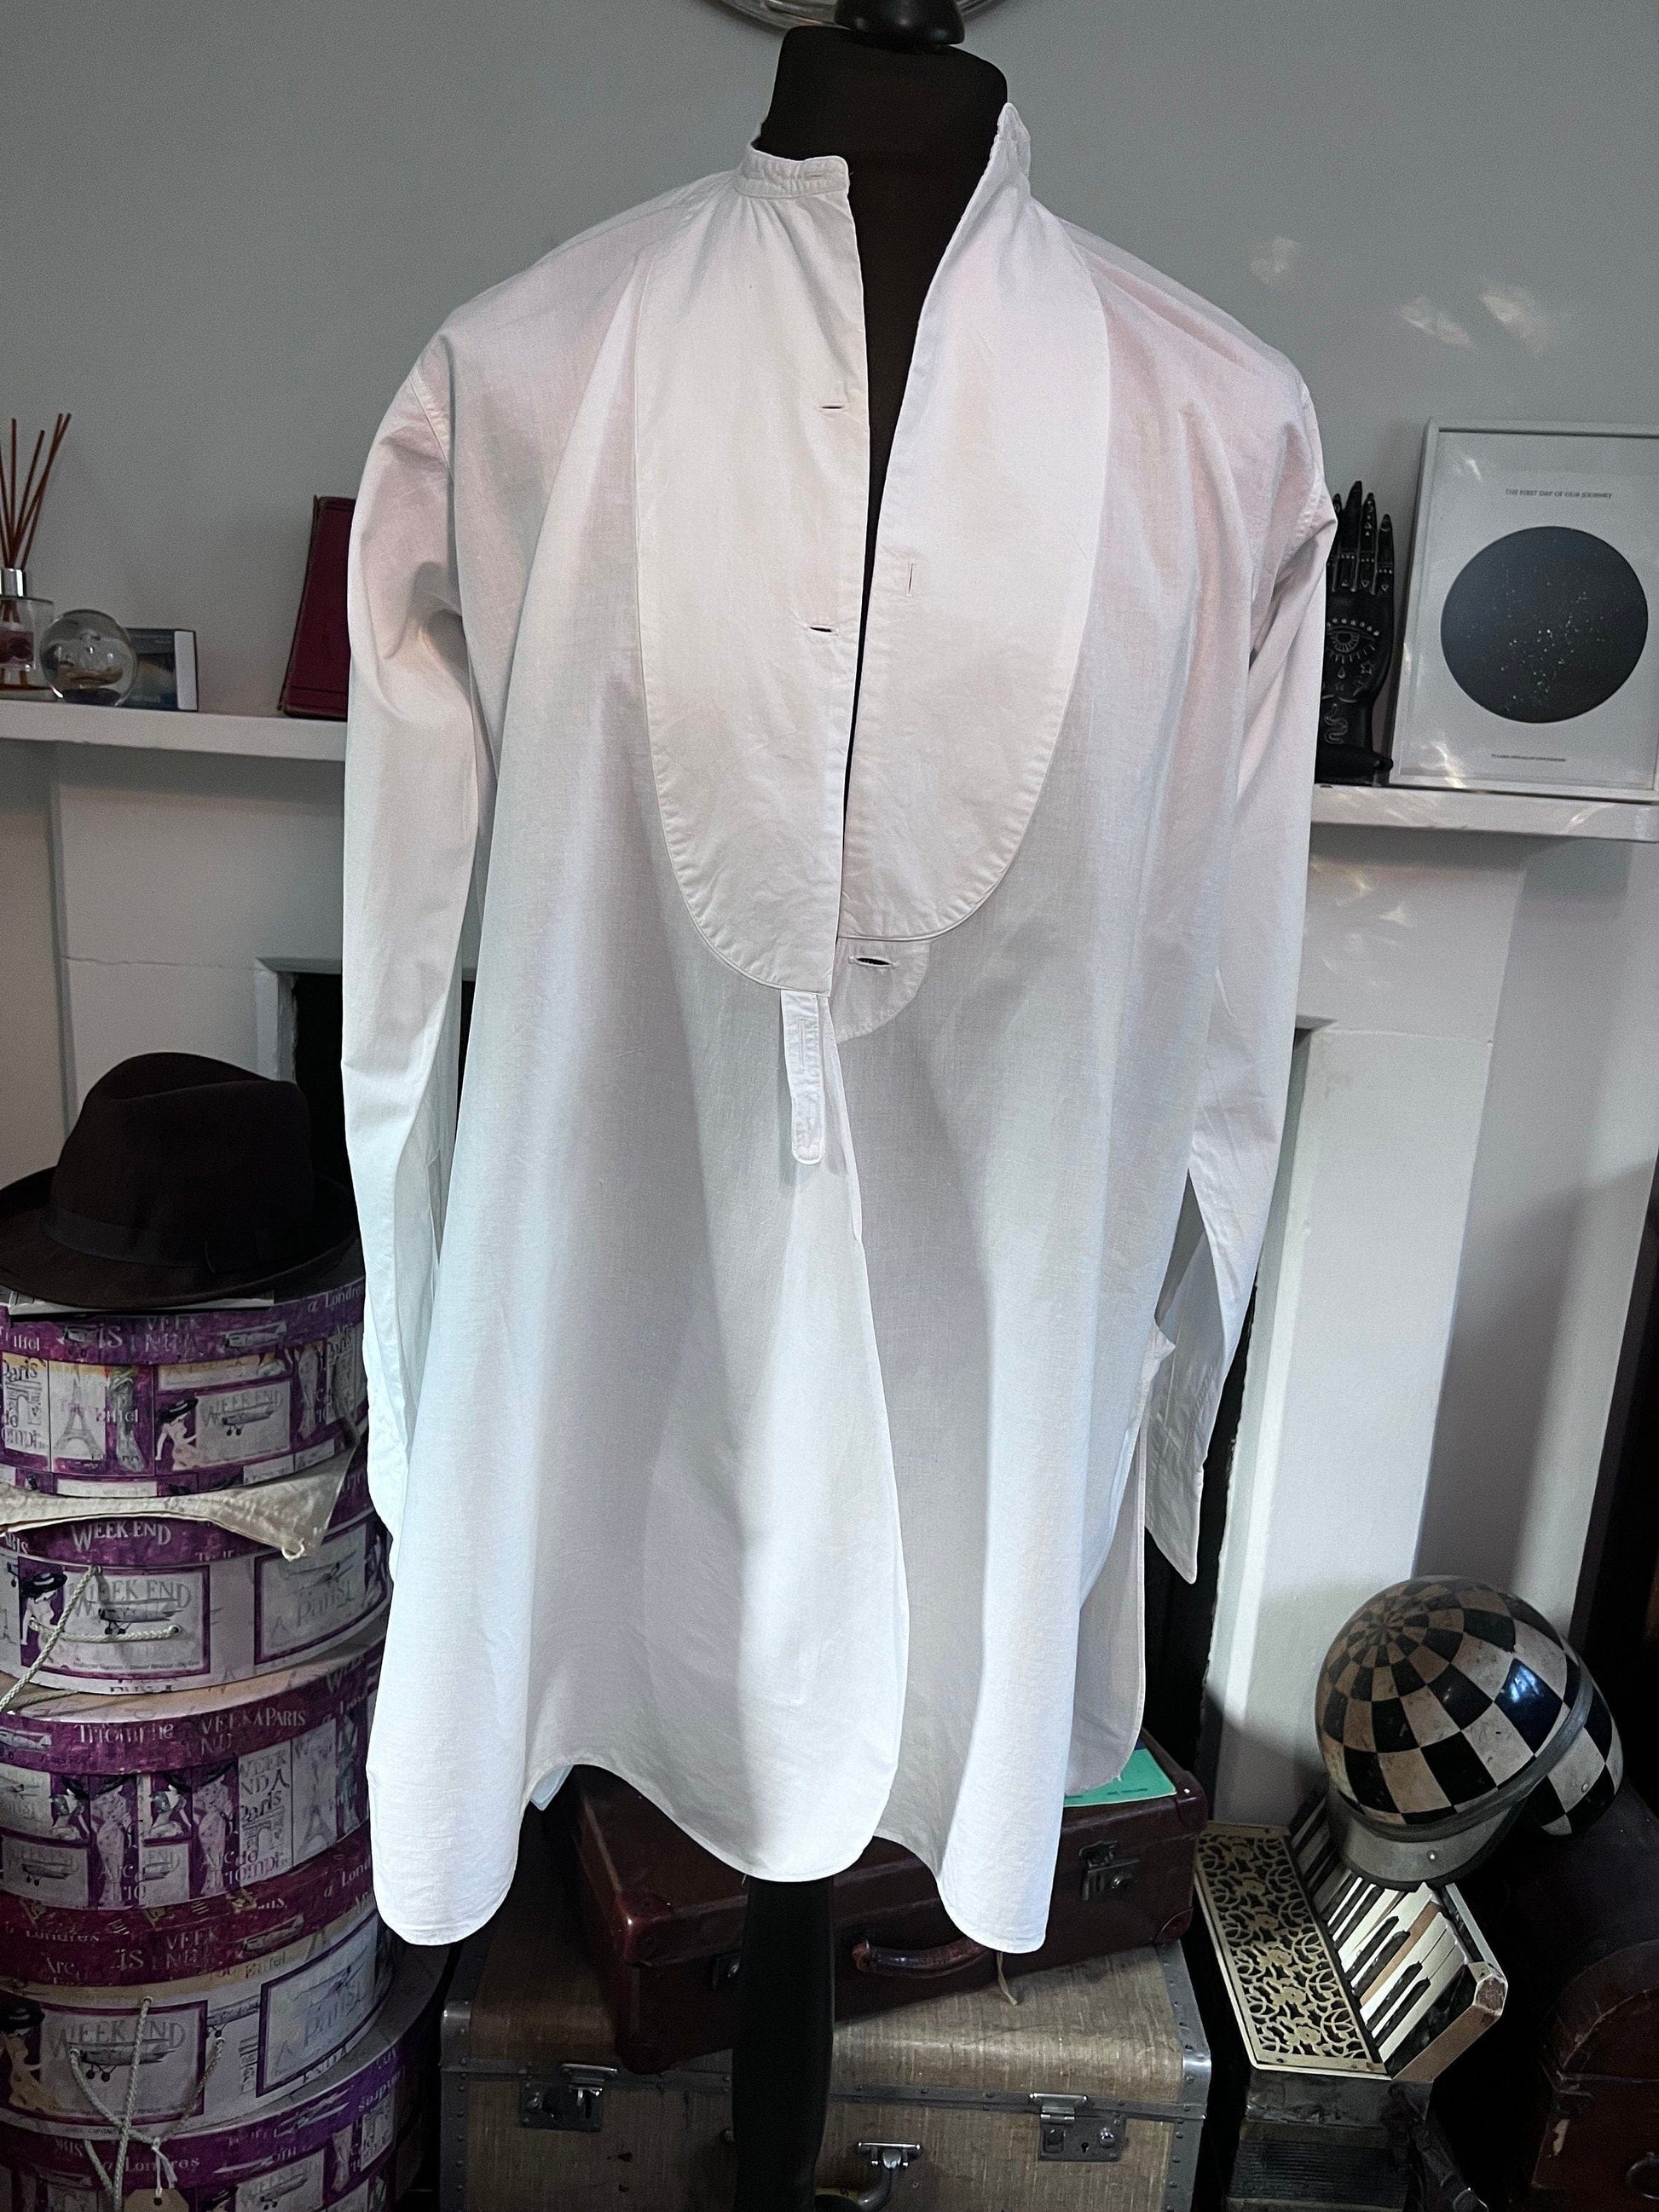 Vintage 1960s Dress Shirt Ryder Amies Cambridge, Bespoke White Shirt, Pleated,Tuxedo Shirt, vintage dress shirt, vintage shirt, men’s shirt